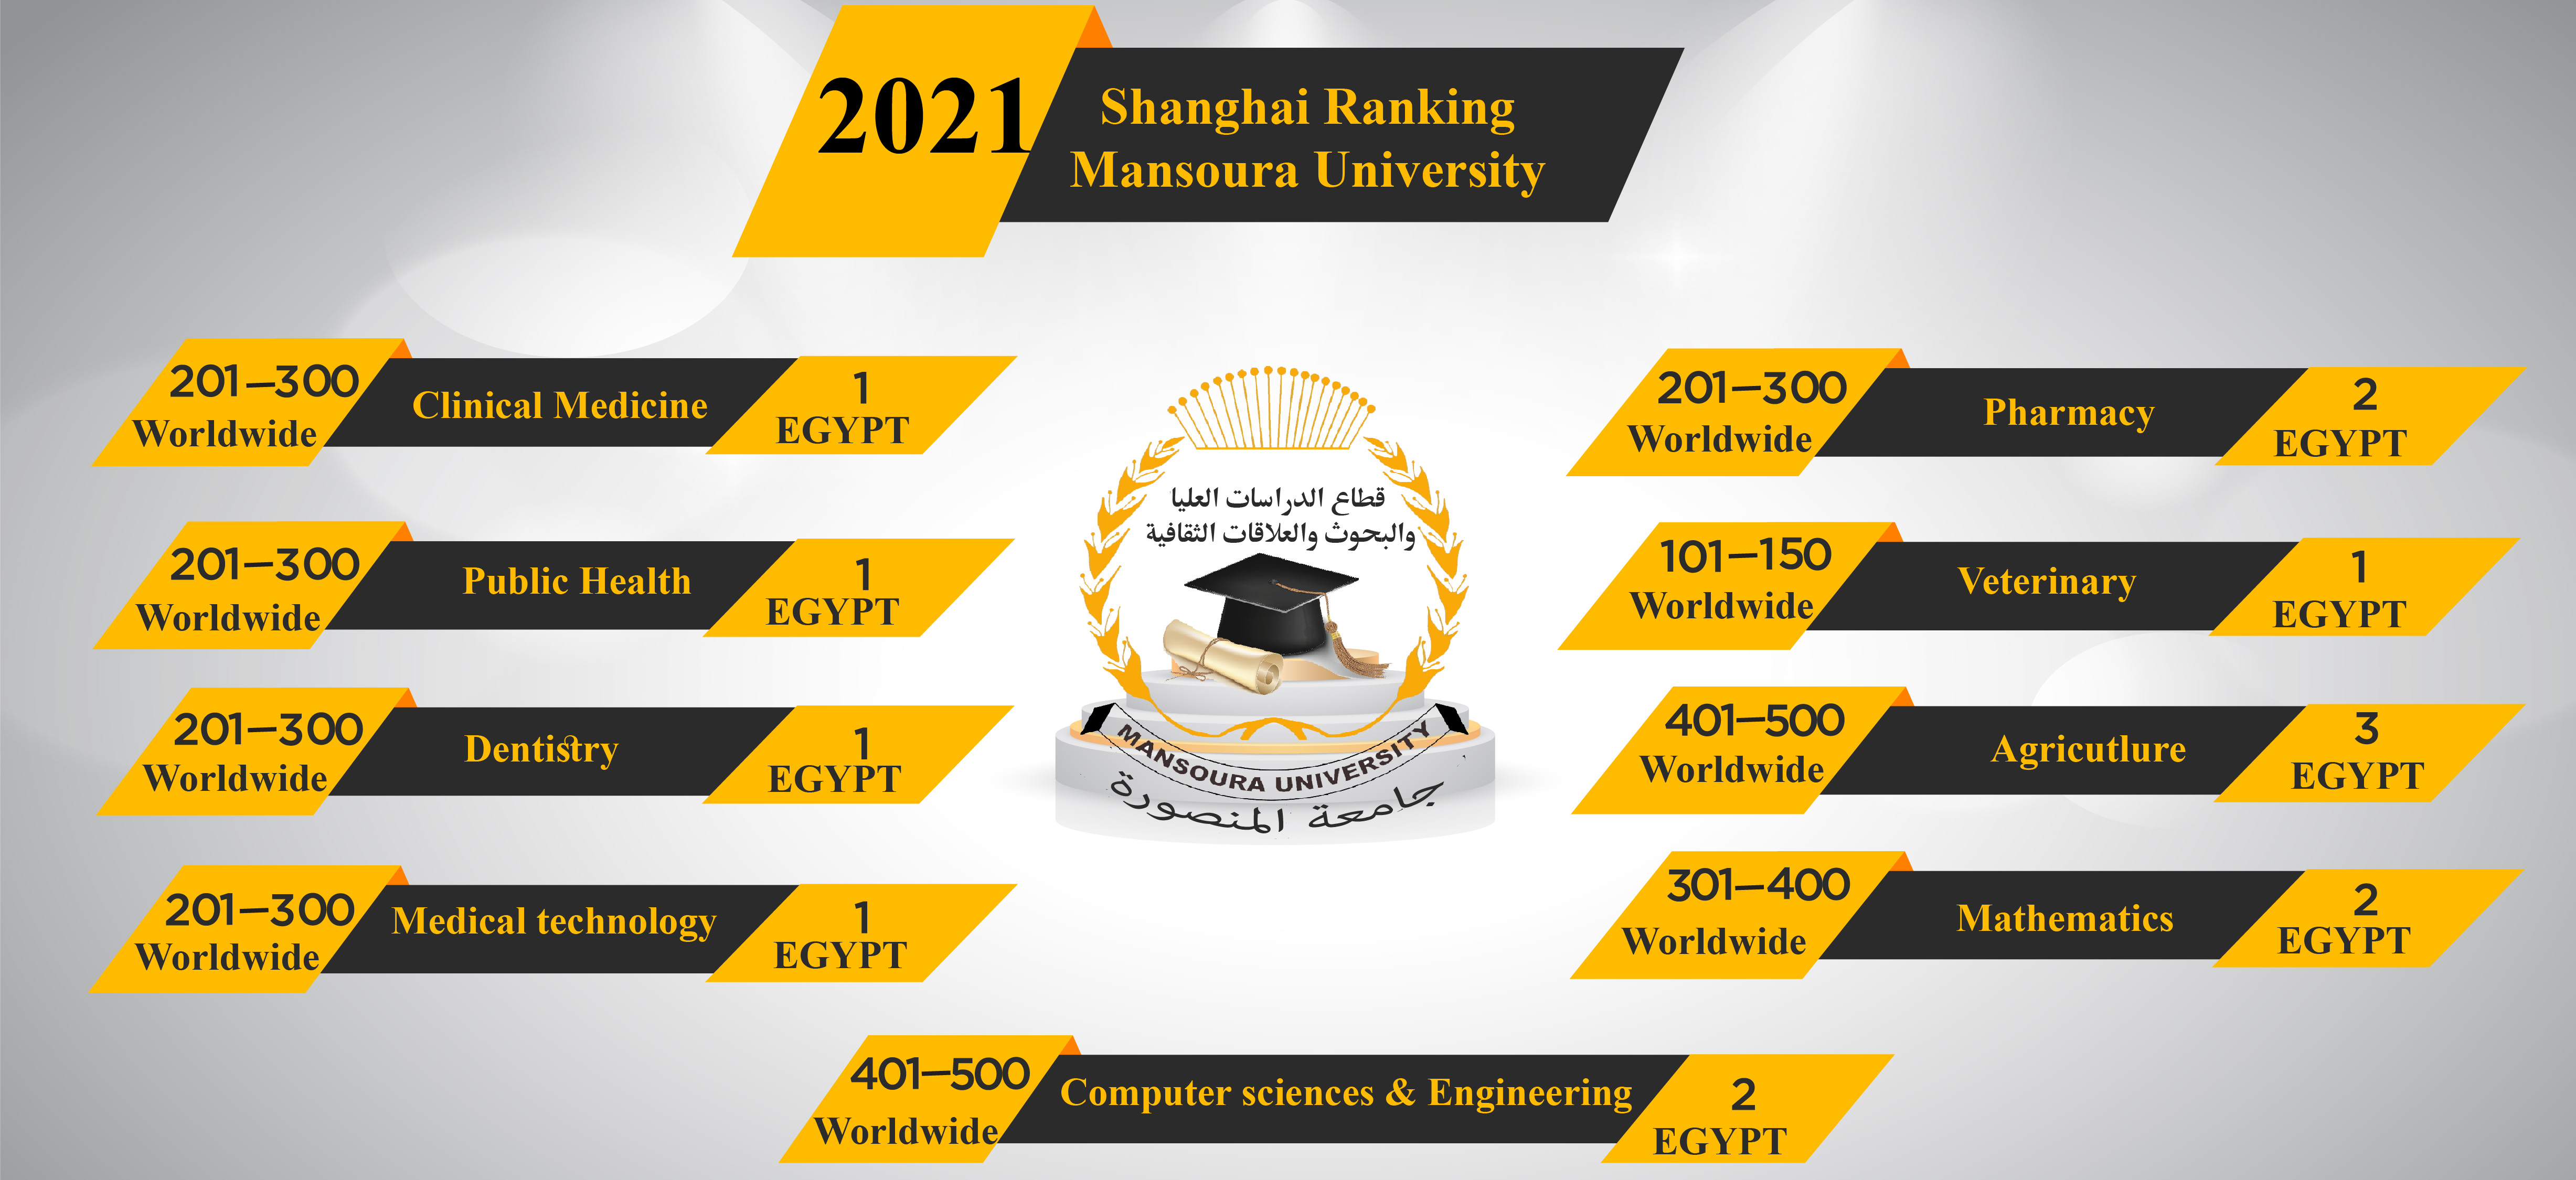 تصنيف جامعة المنصورة في "شنغهاي" الصيني لعام 2021  